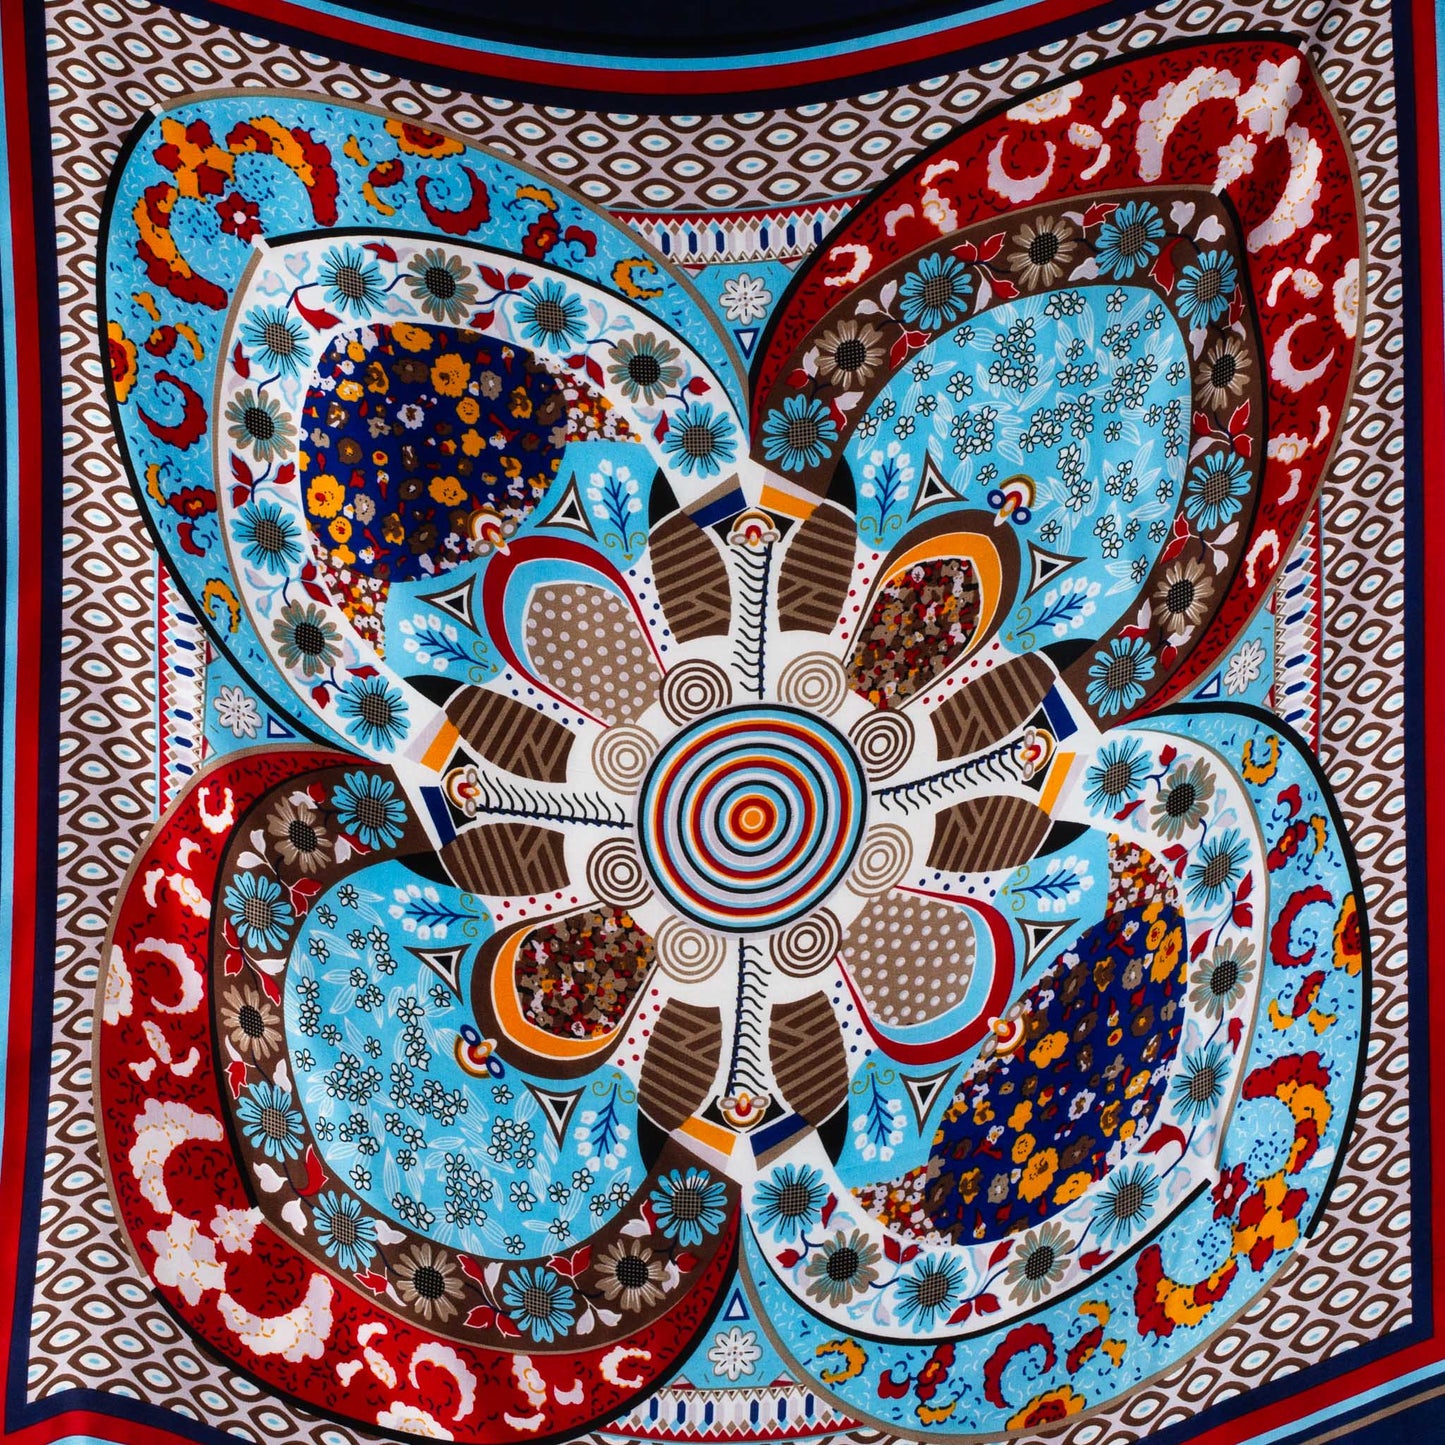 Eșarfă damă din mătase cu imprimeu ozora  , 70 x 70 cm - Albastru, Roșu